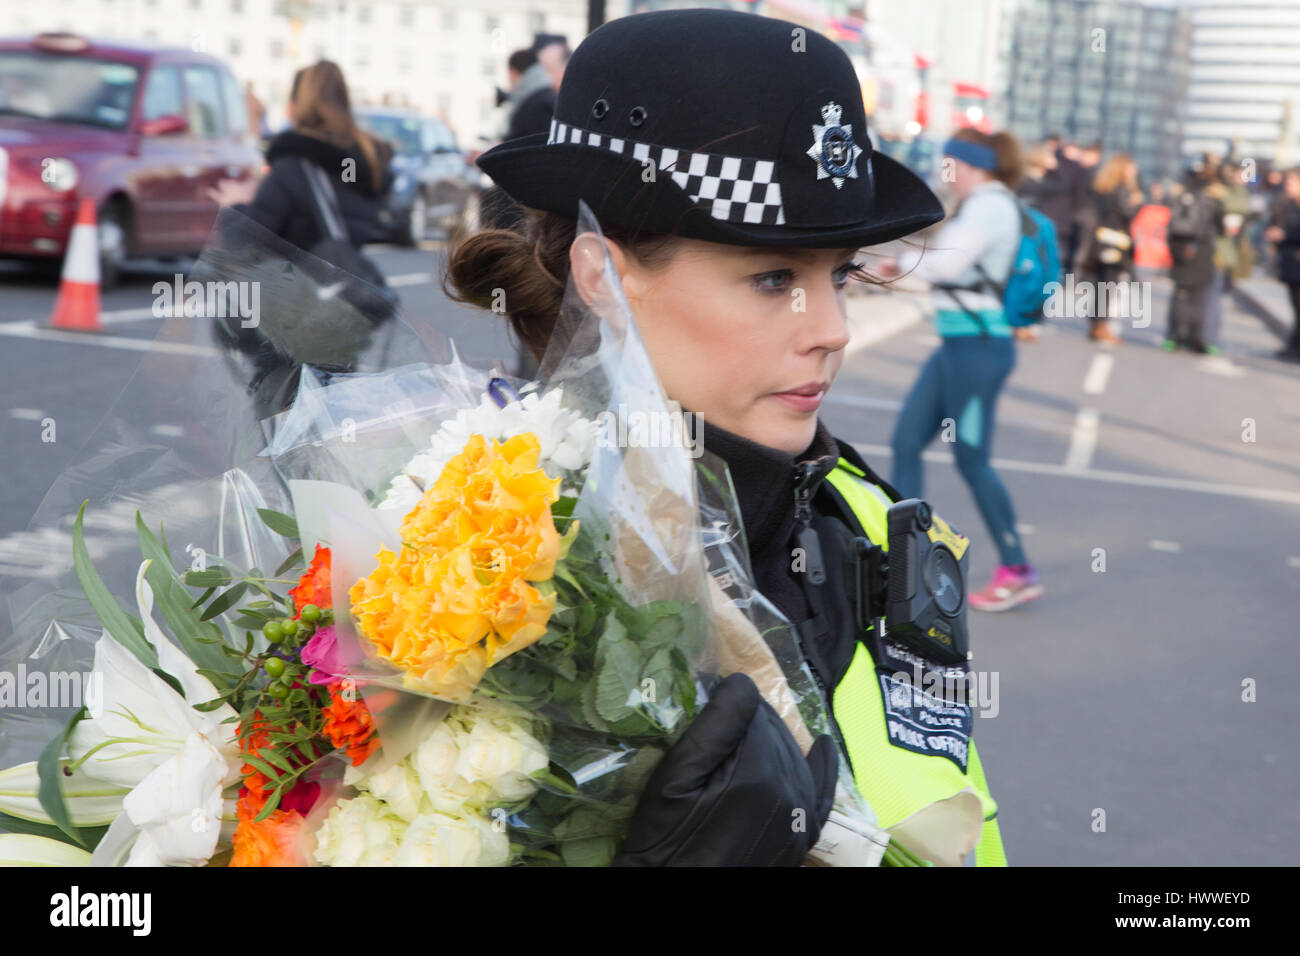 Londra, Regno Unito. 23 Mar, 2017. Una poliziotta stabilisce omaggio floreale al di fuori del palazzo di Westminster a seguito ieri in un attacco in cui un funzionario di polizia è stato ucciso. Credito: Thabo Jaiyesimi/Alamy Live News Foto Stock